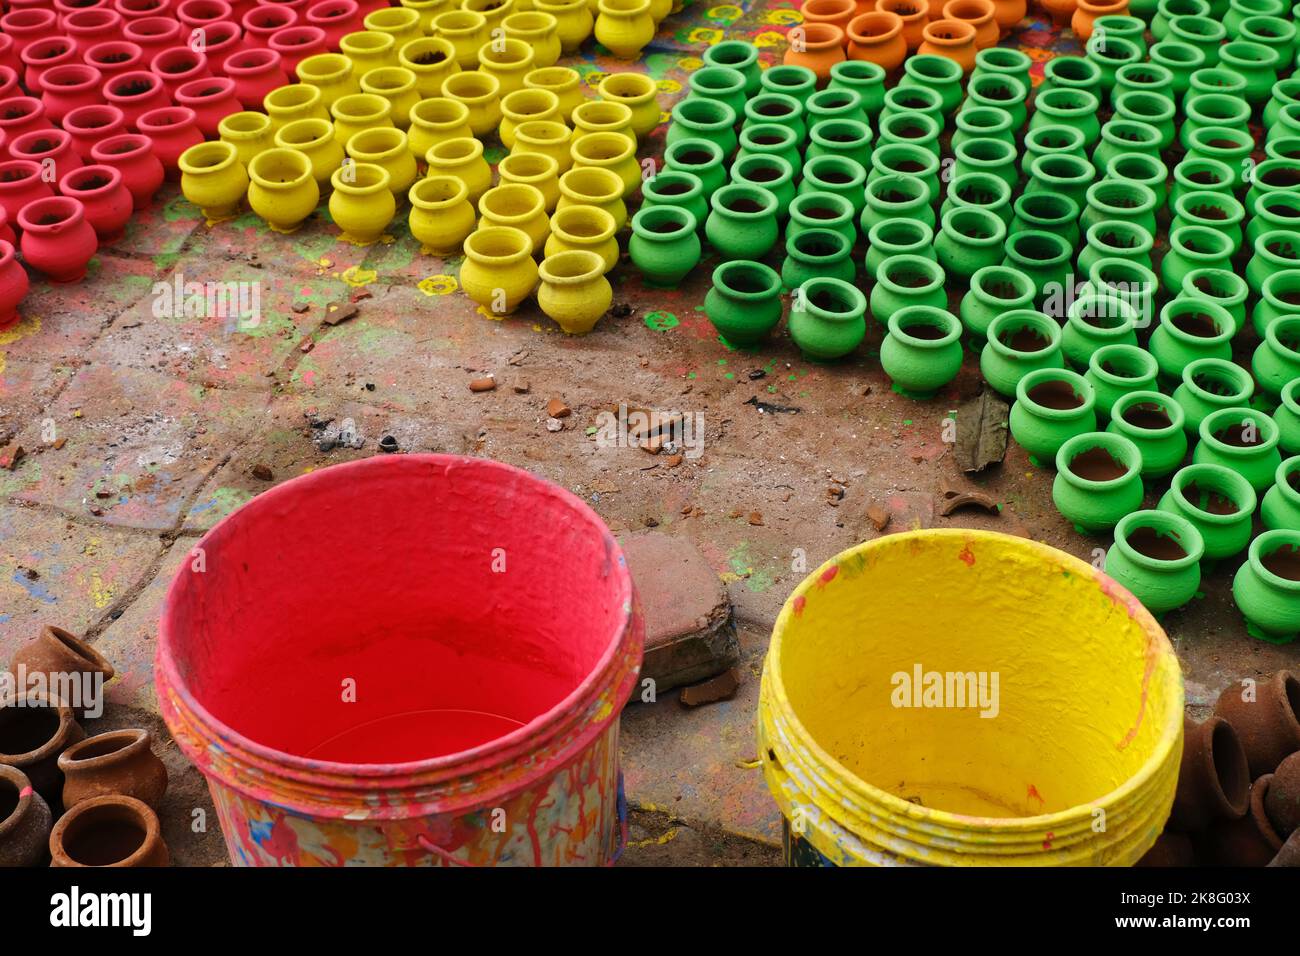 Kunstvolle Bemalung irdischer Töpfe, Hintergrund farbenfroher Töpfe, die während des Diwali-Festivals in Indien für Rituale verwendet wurden. Stockfoto